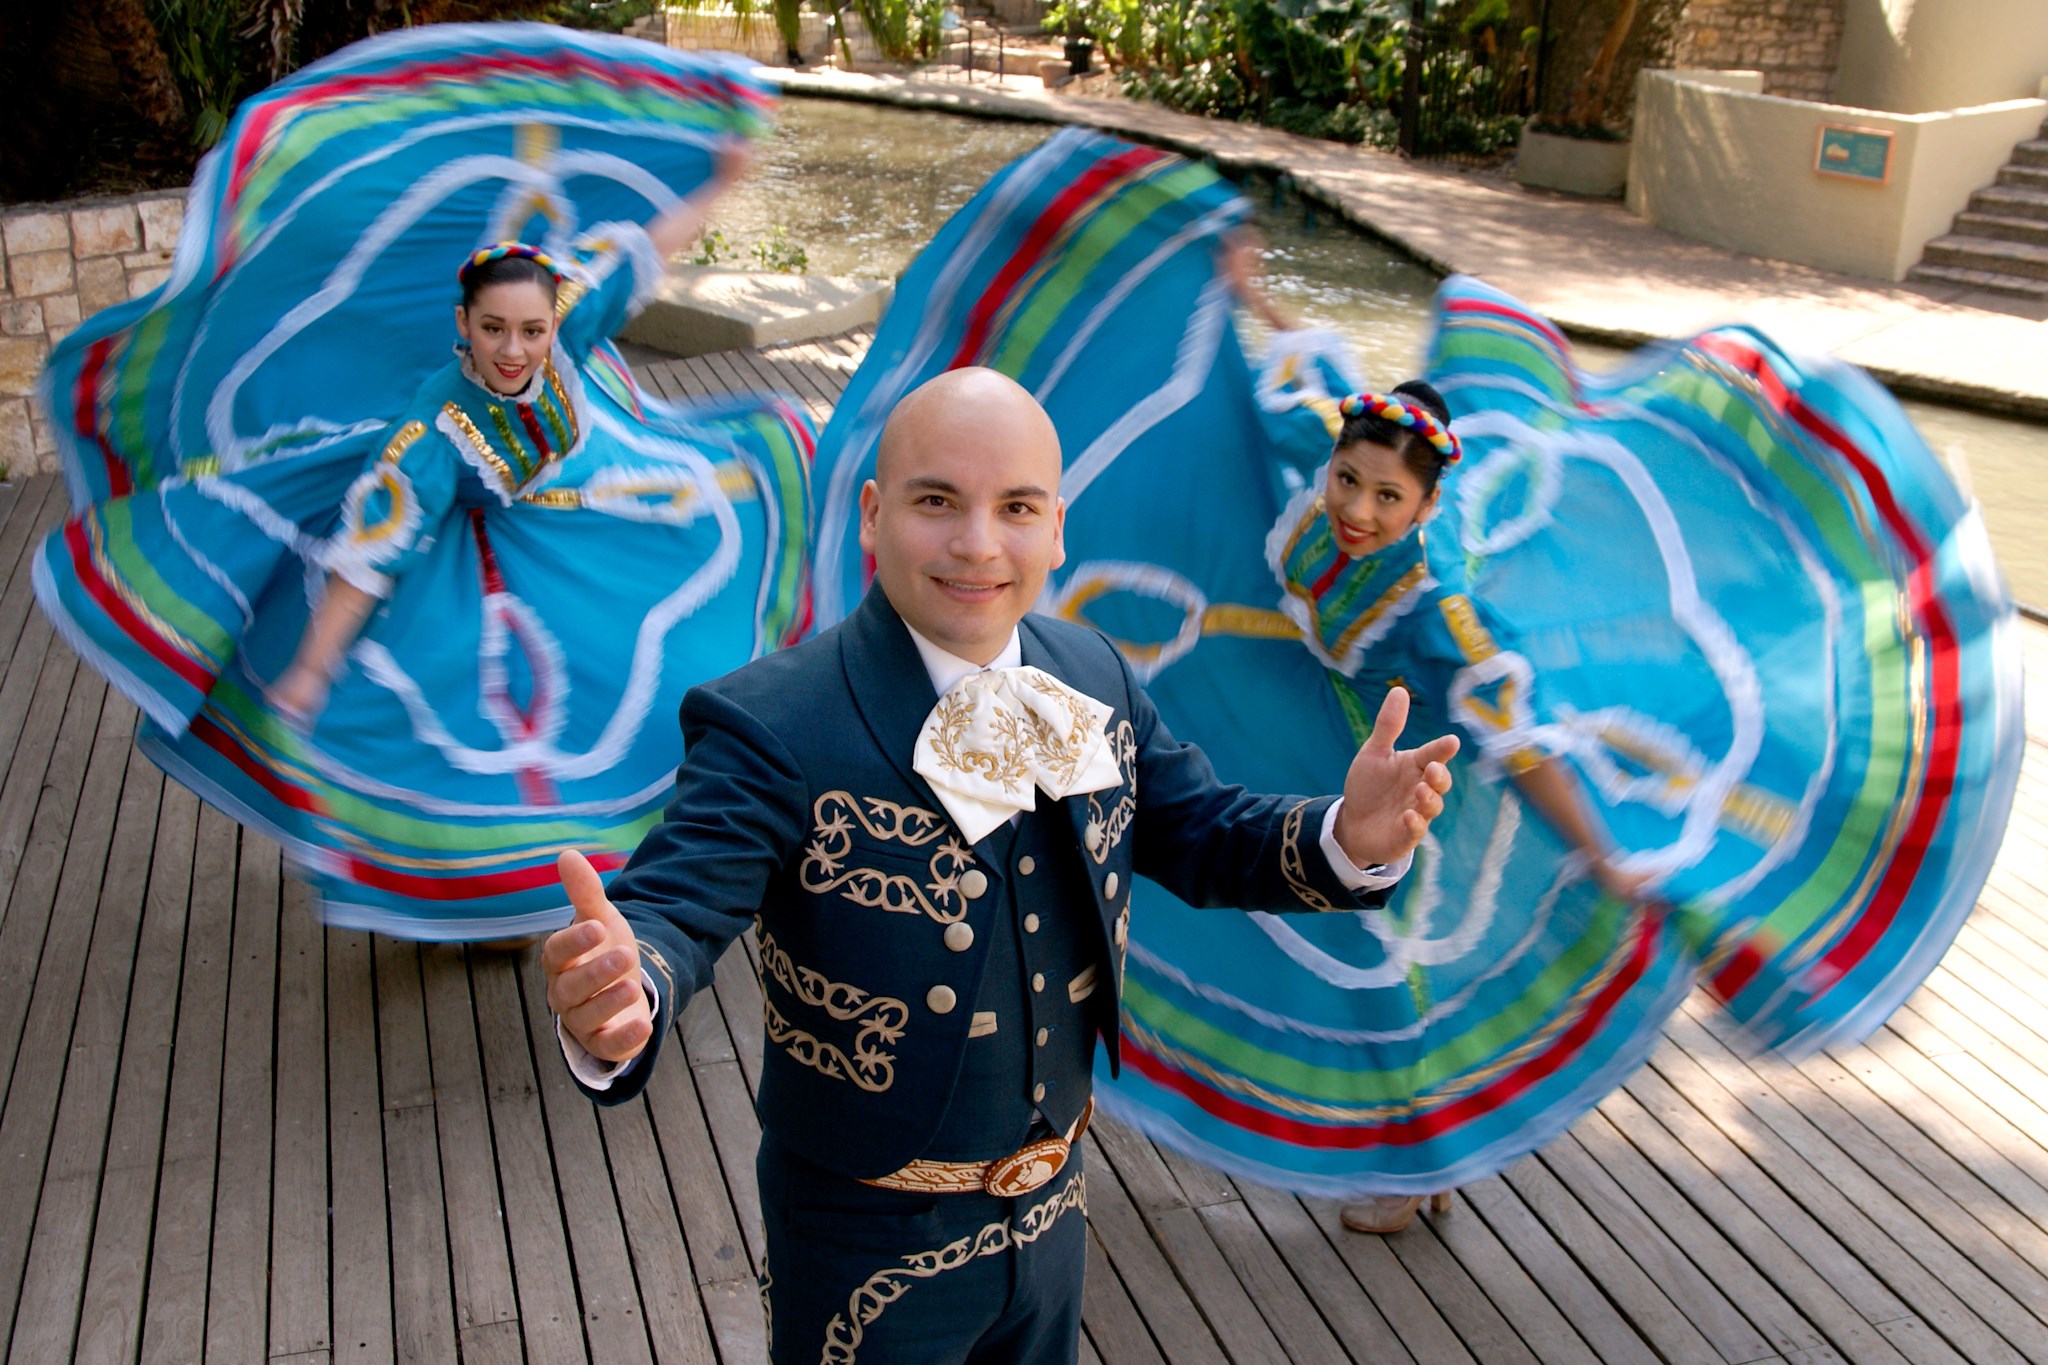 Dancers celebrate a Mexican festival in San Antonio.